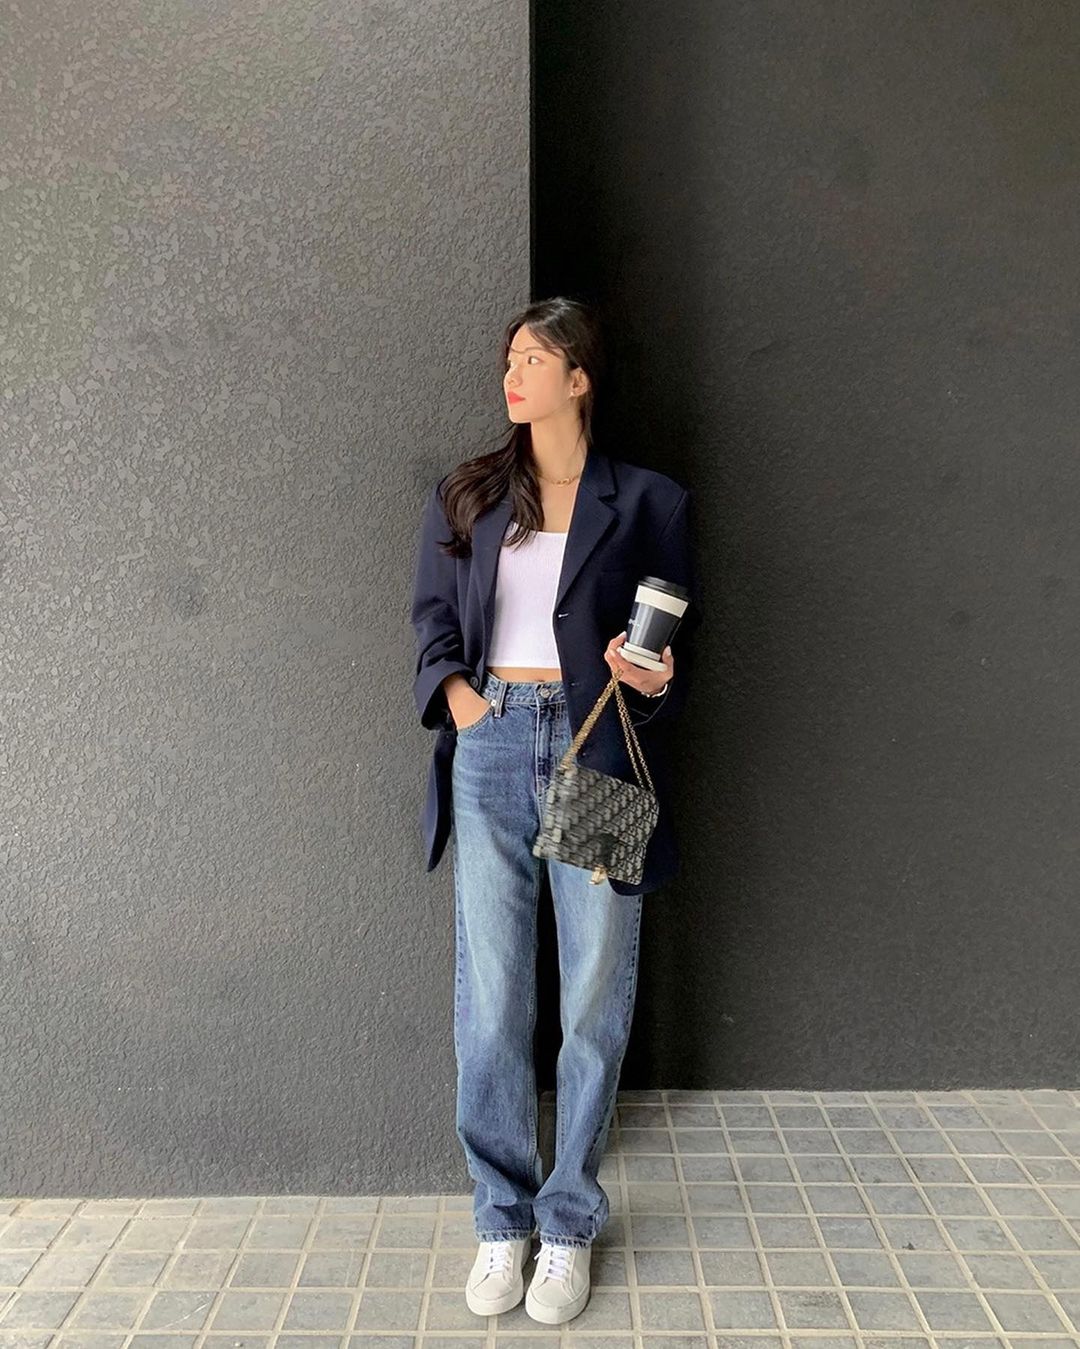 Học nàng blogger Hàn cách diện jeans “đỉnh của chóp”: Vừa hack dáng vừa thanh lịch để diện đến sở làm - Ảnh 5.